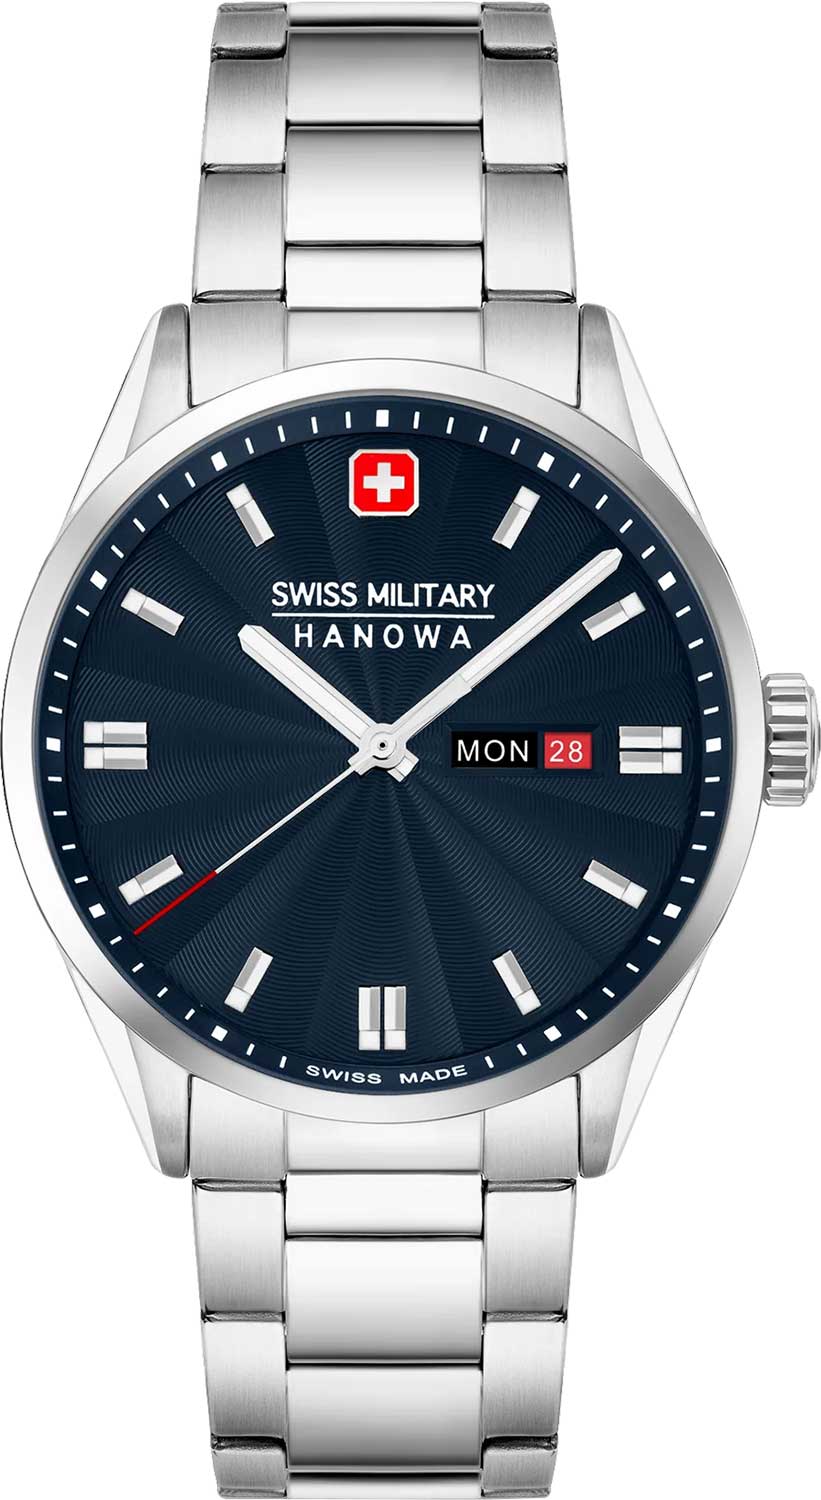    Swiss Military Hanowa SMWGH0001602